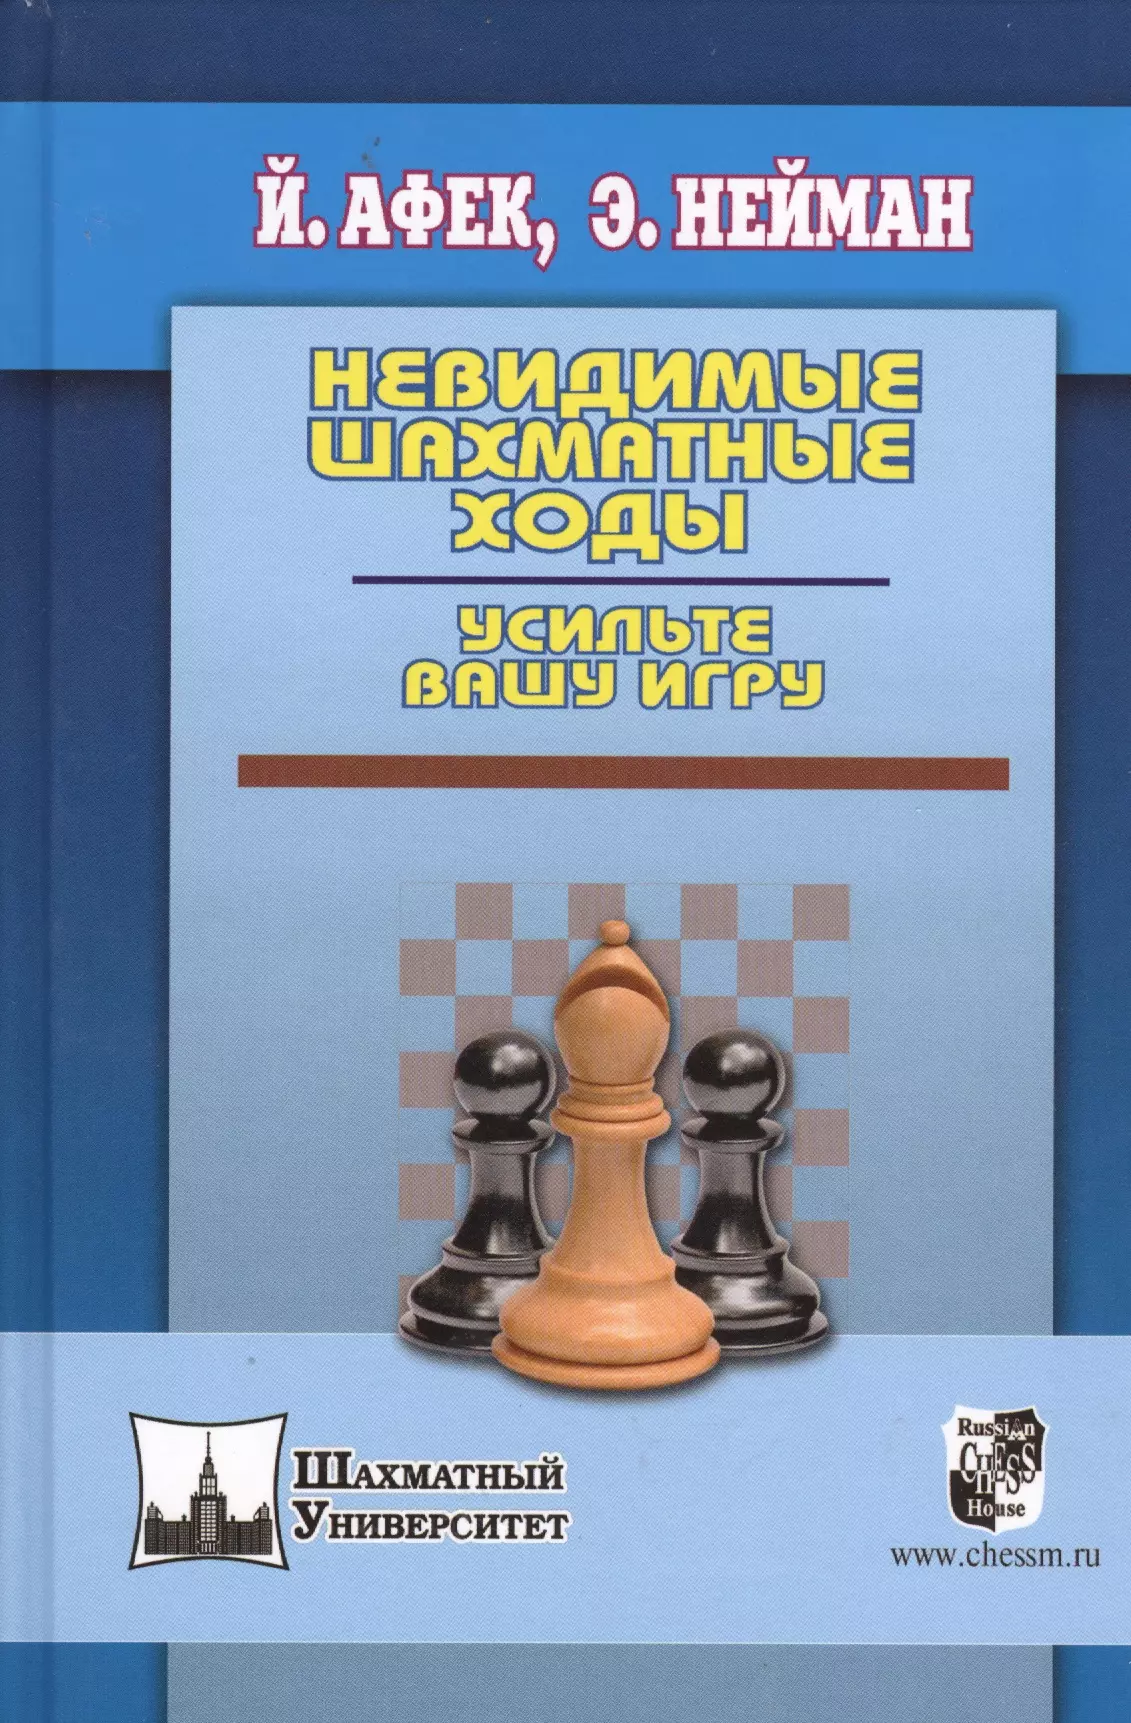 Нейман Эммануил, Афек Йоханан Невидимые шахматные ходы. Усильте вашу игру мюллер э робинзонетта